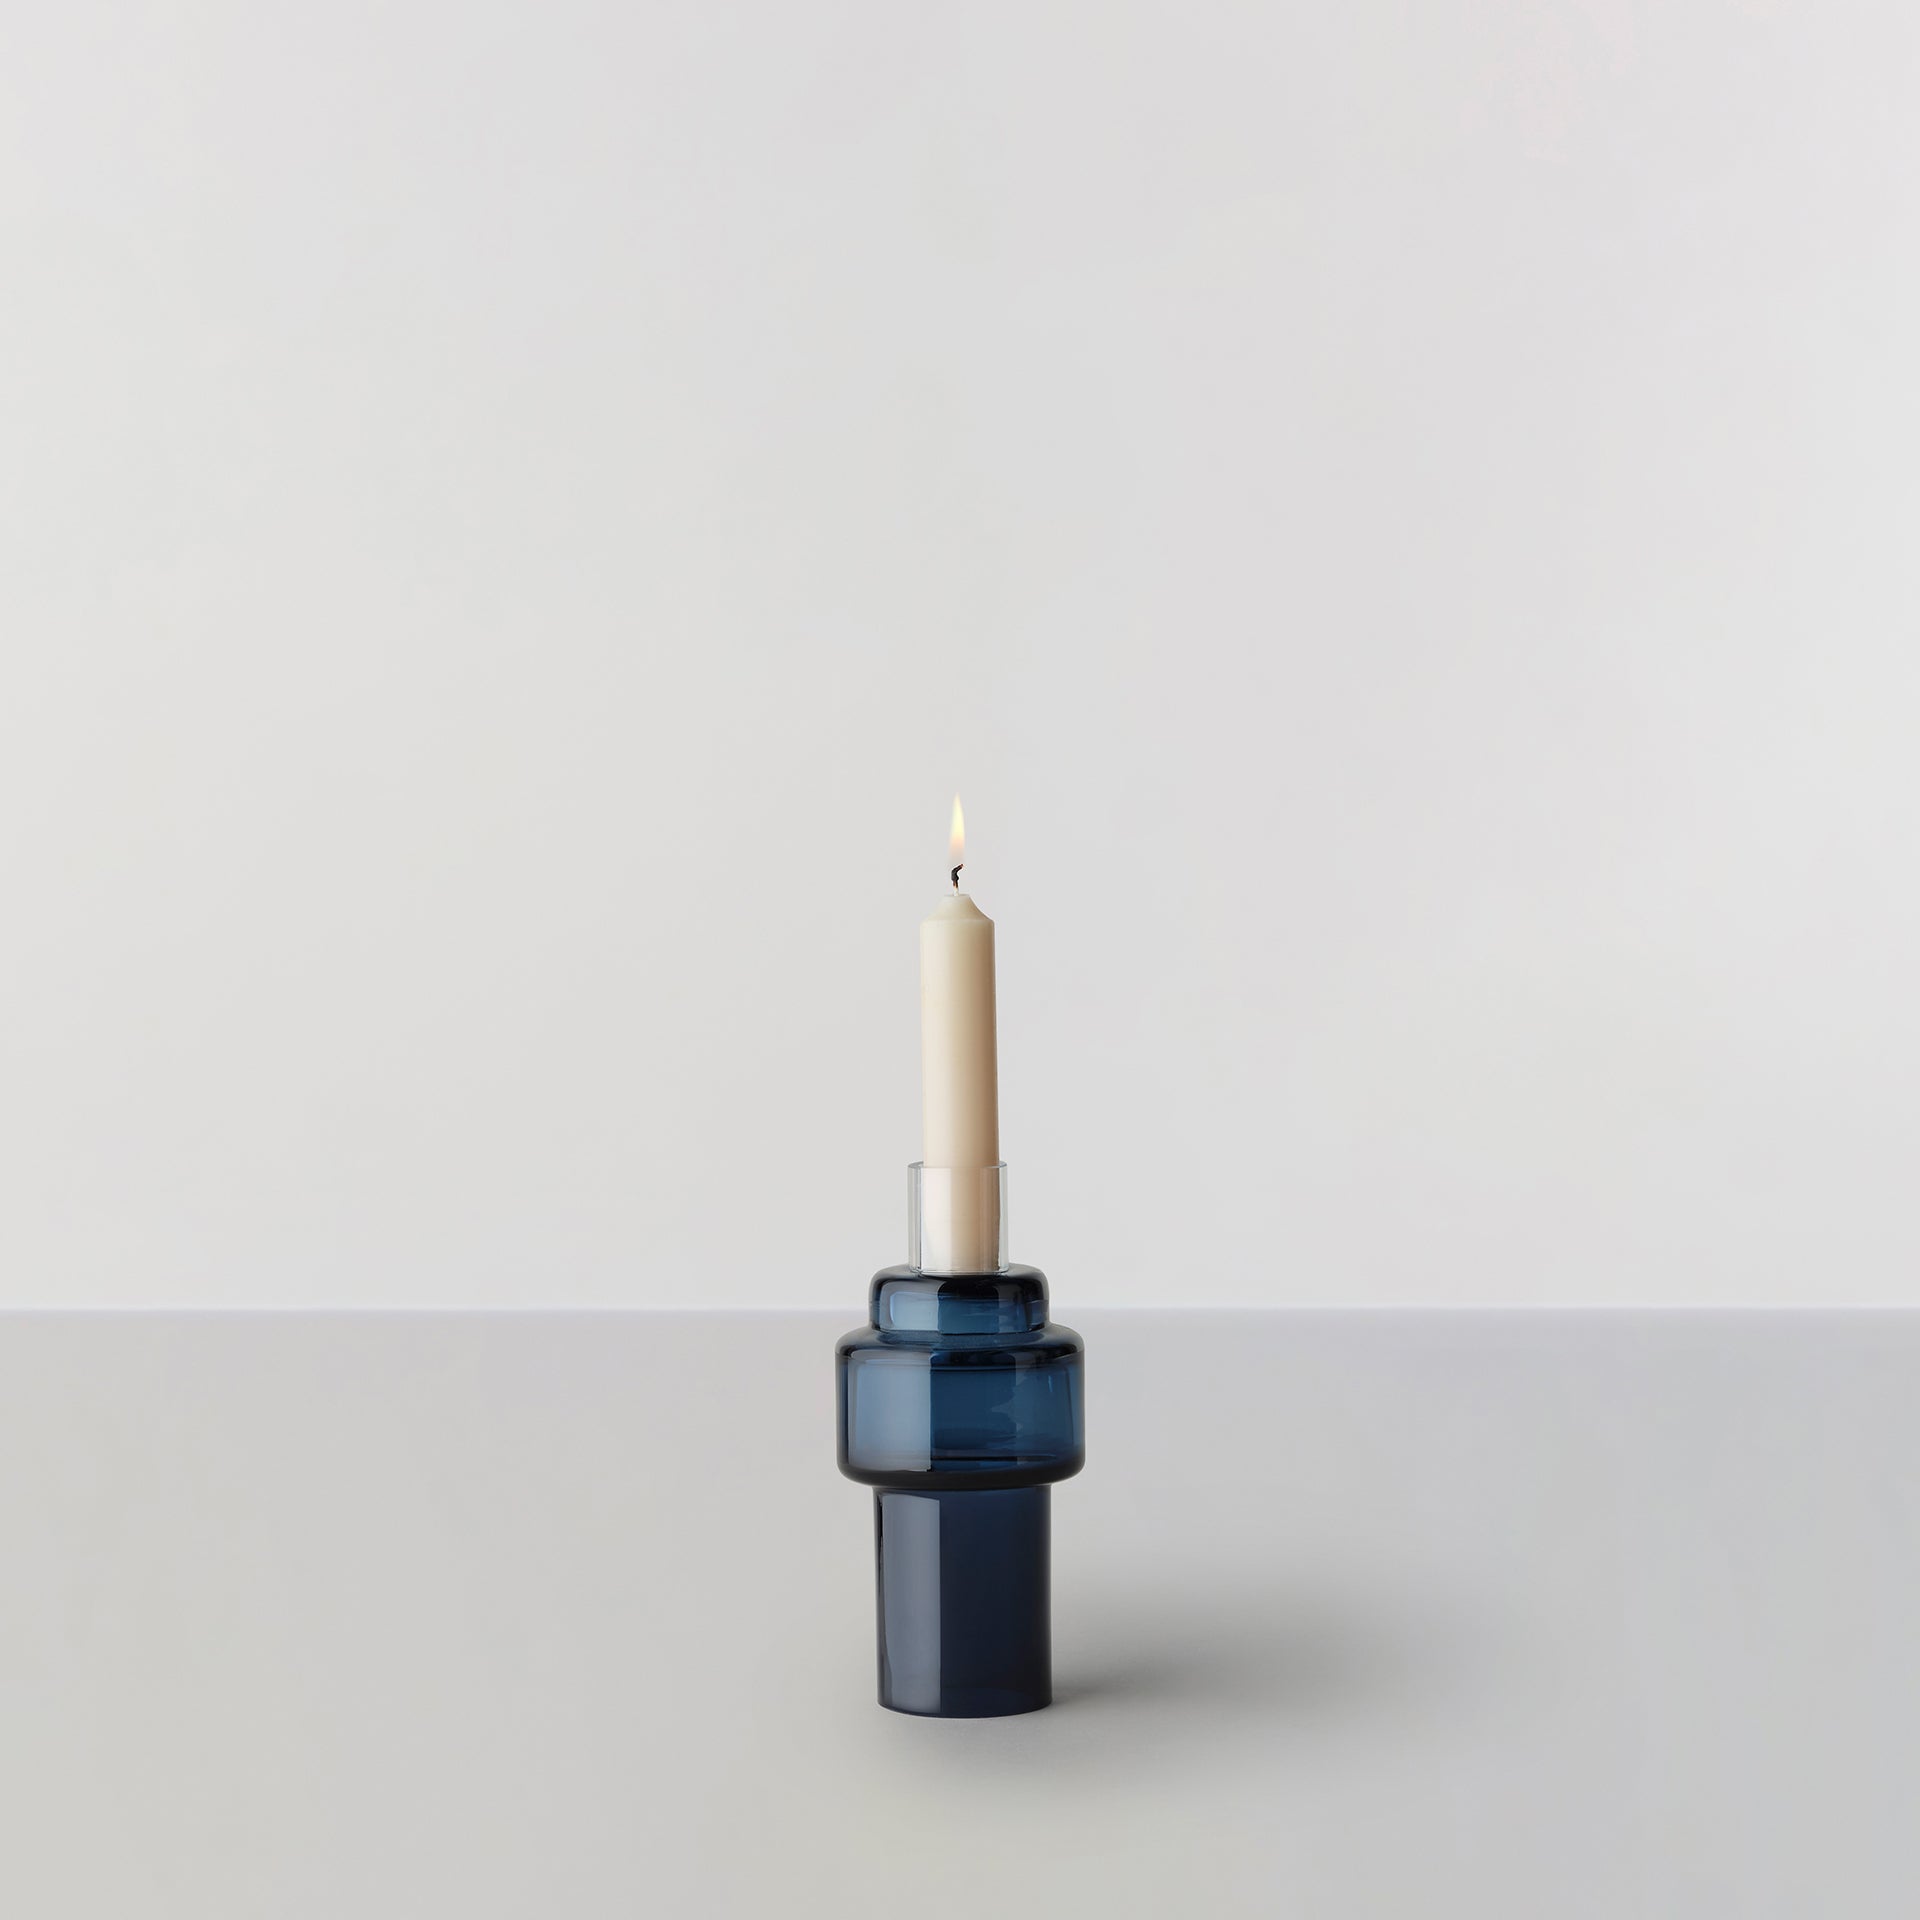 Billede af Glass Candlestick no. 55 - Indigo blue